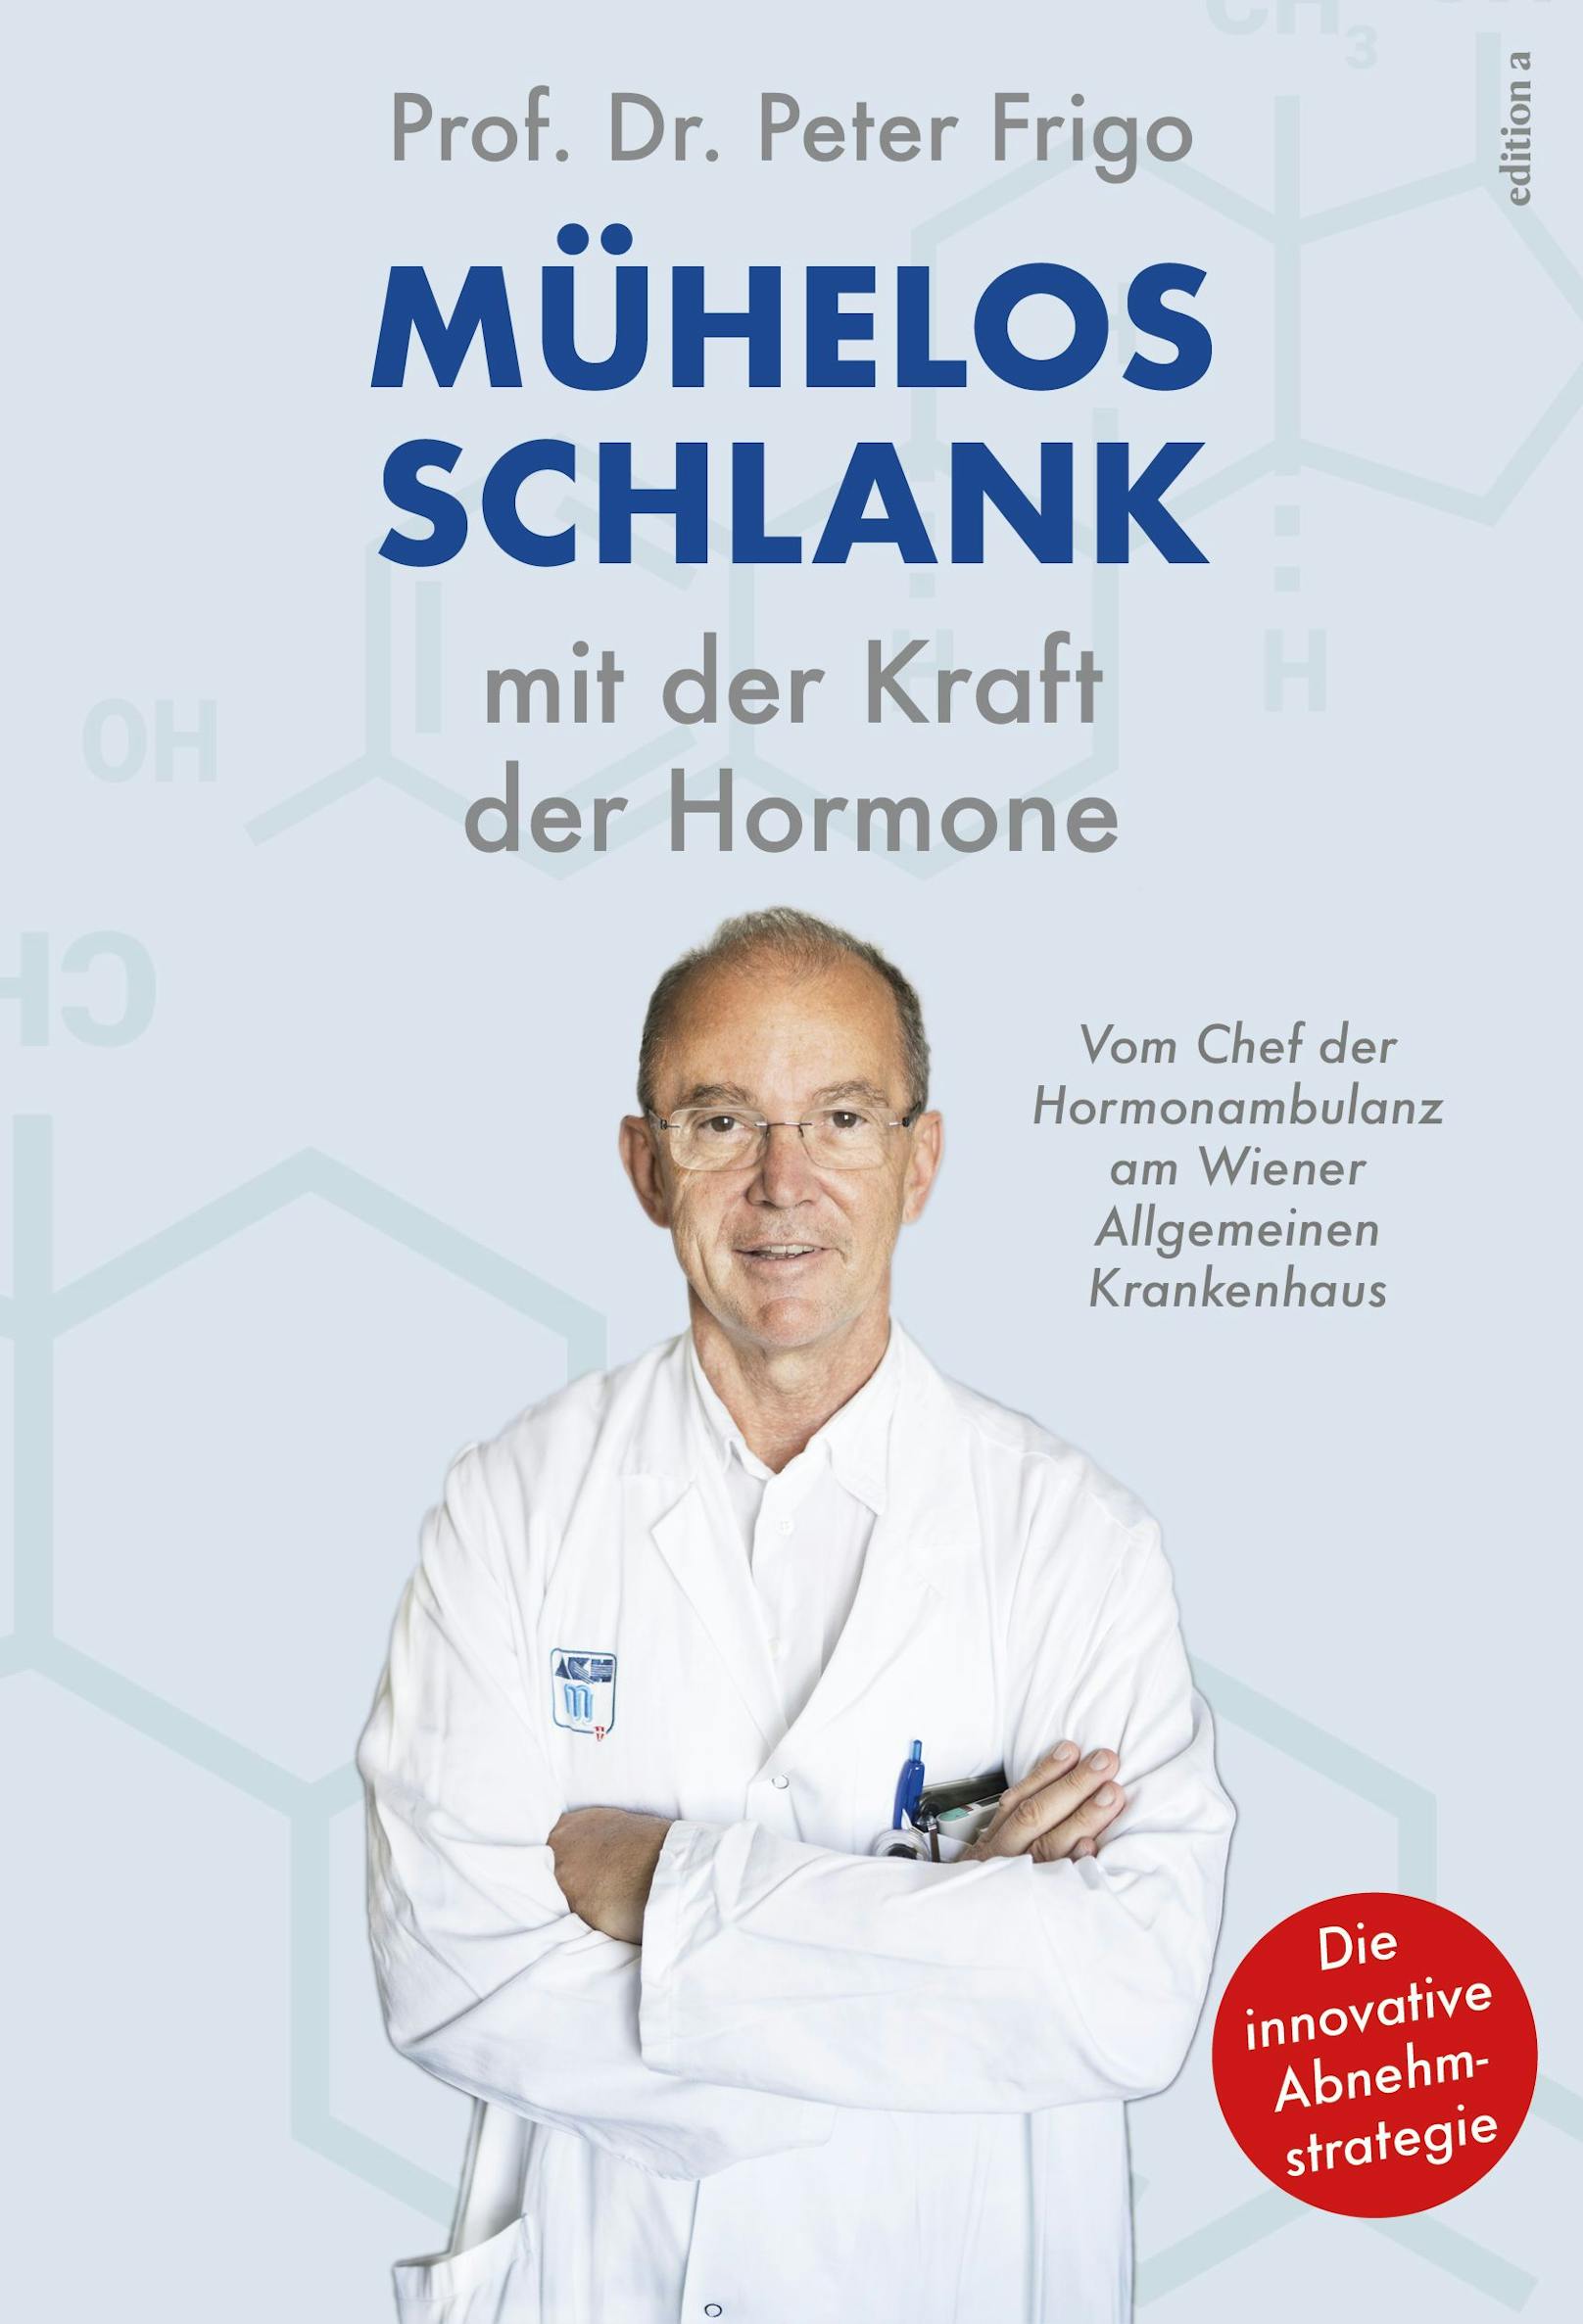 "Mühelos schlank mit der Kraft der Hormone" von Prof. Dr. Frigo, erschienen bei edition a um 22 Euro